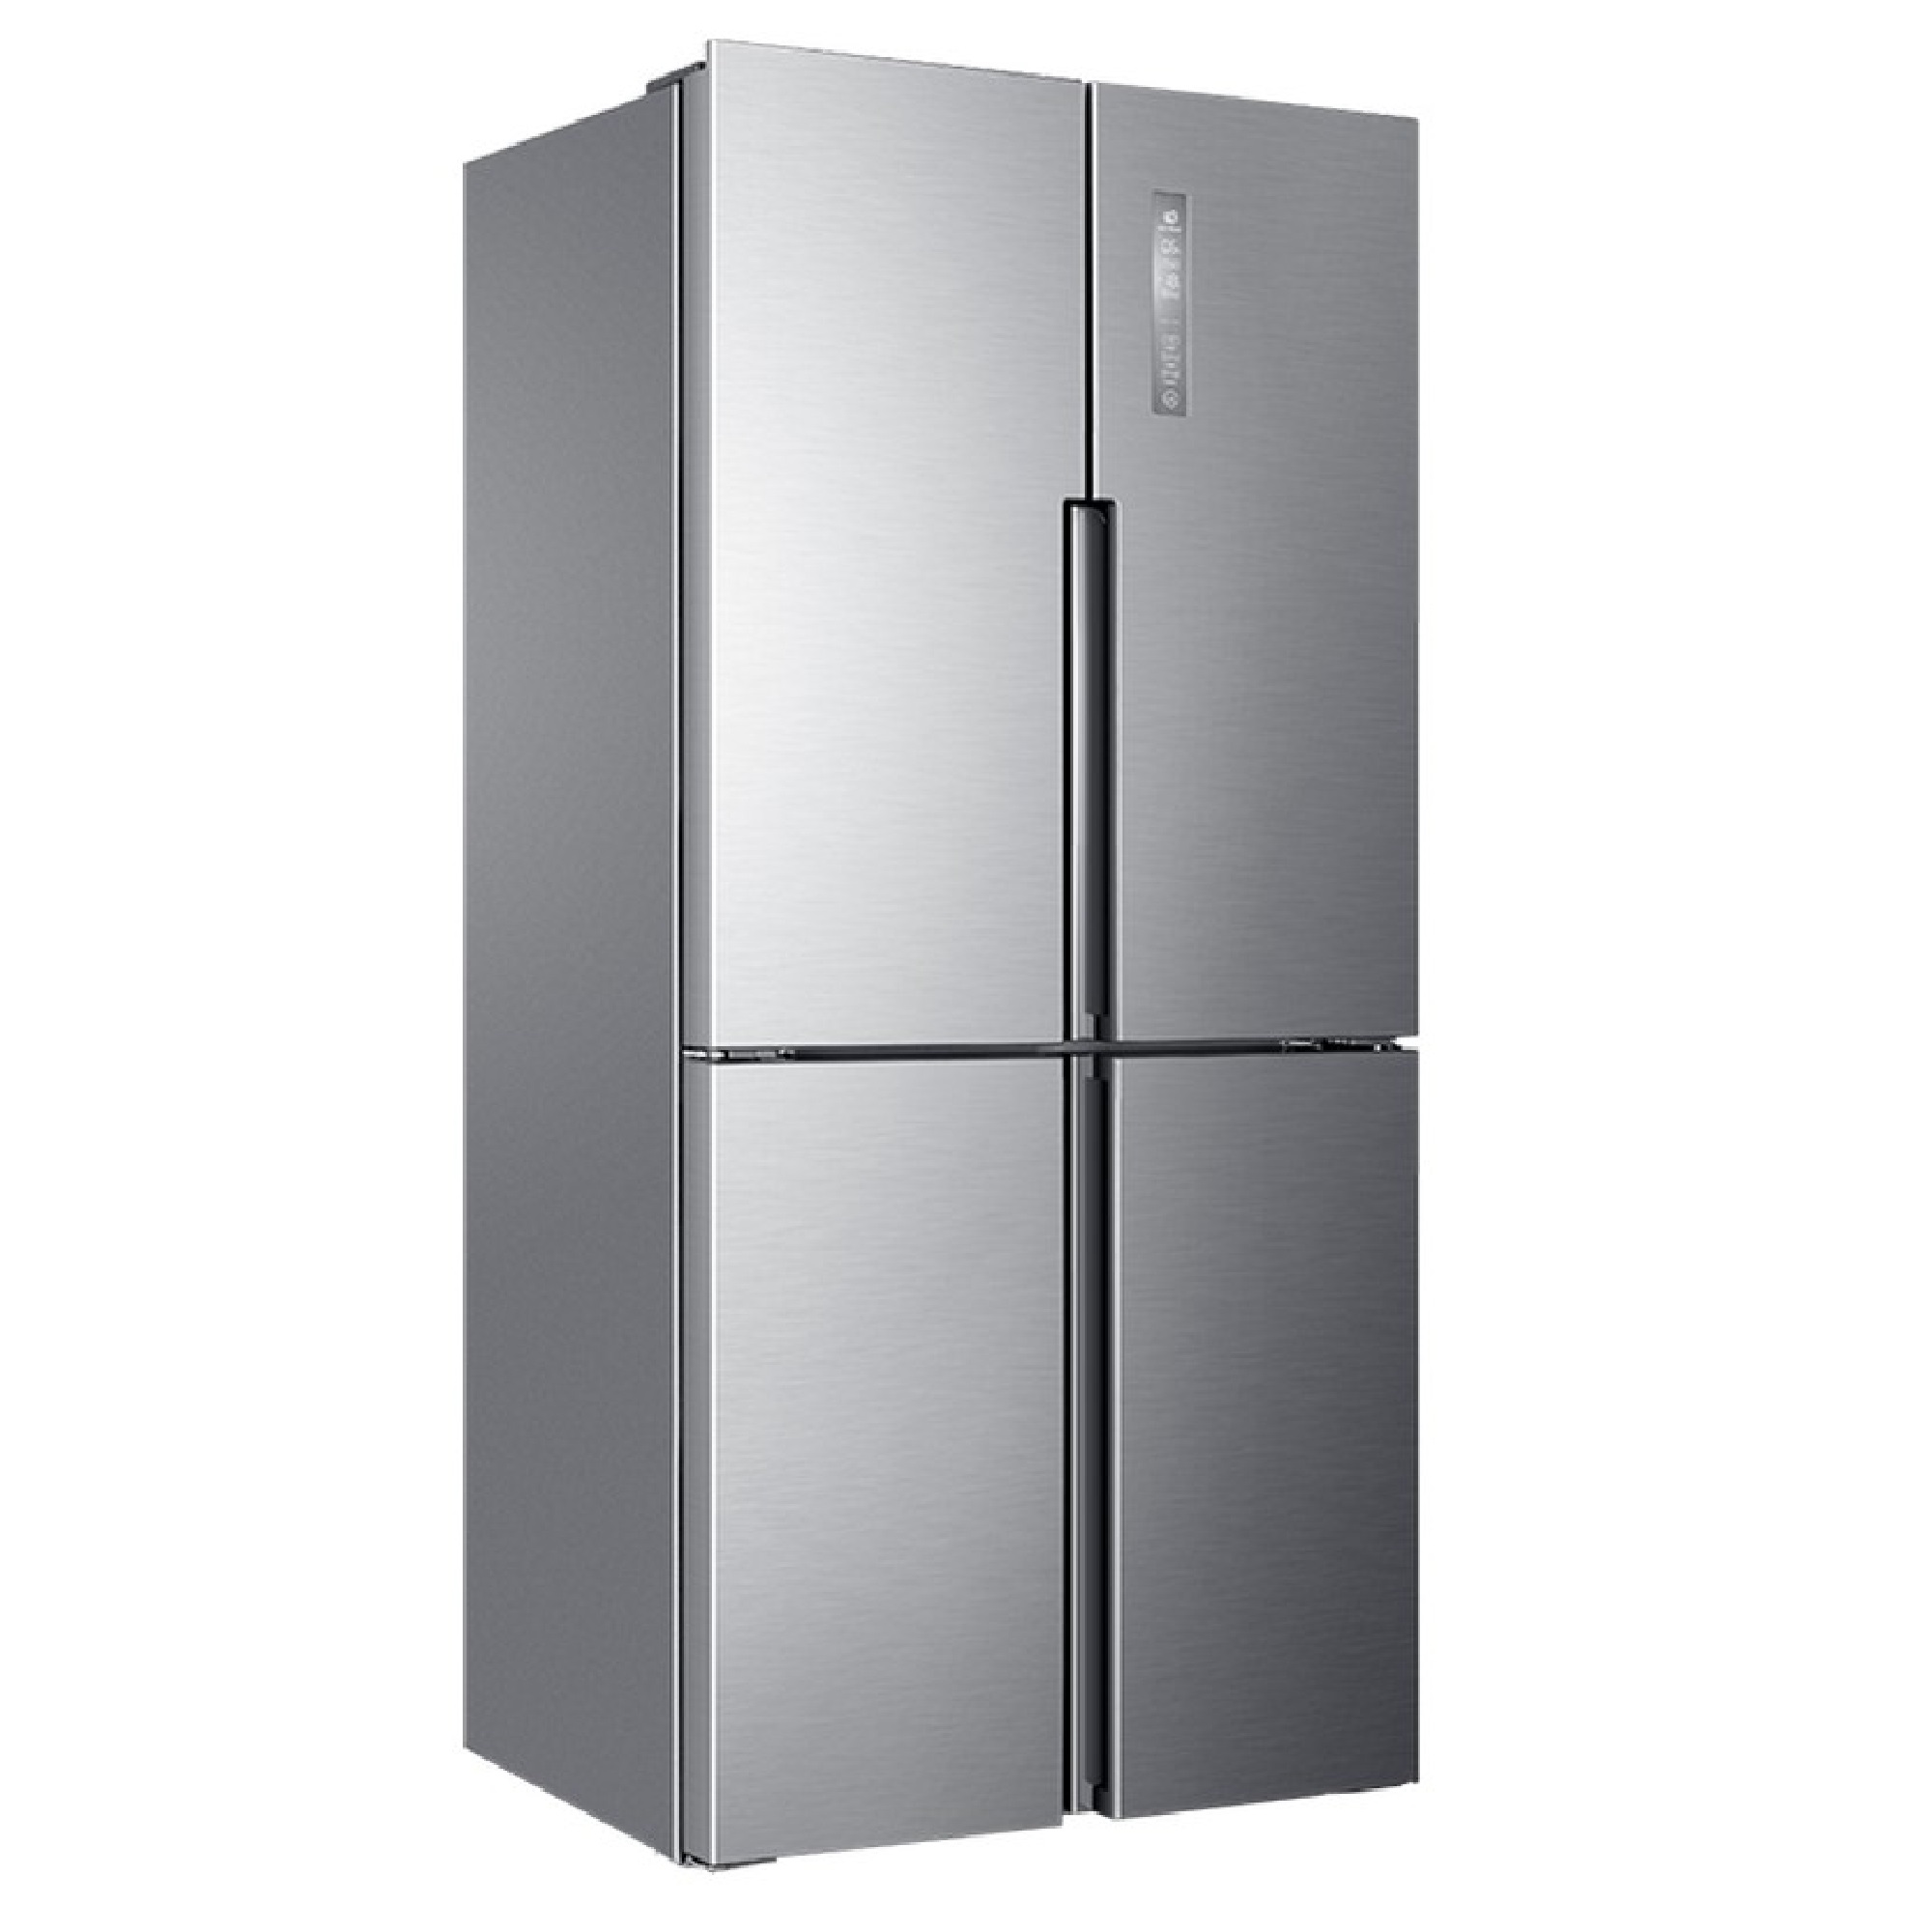 Официальные производители холодильников. Холодильник многодверный Haier HTF-456dm6ru. Холодильник (Side-by-Side) Haier HRF-541dg7ru. Холодильник Haier Side by Side. Холодильник Хаер HTF 456dm6ru.